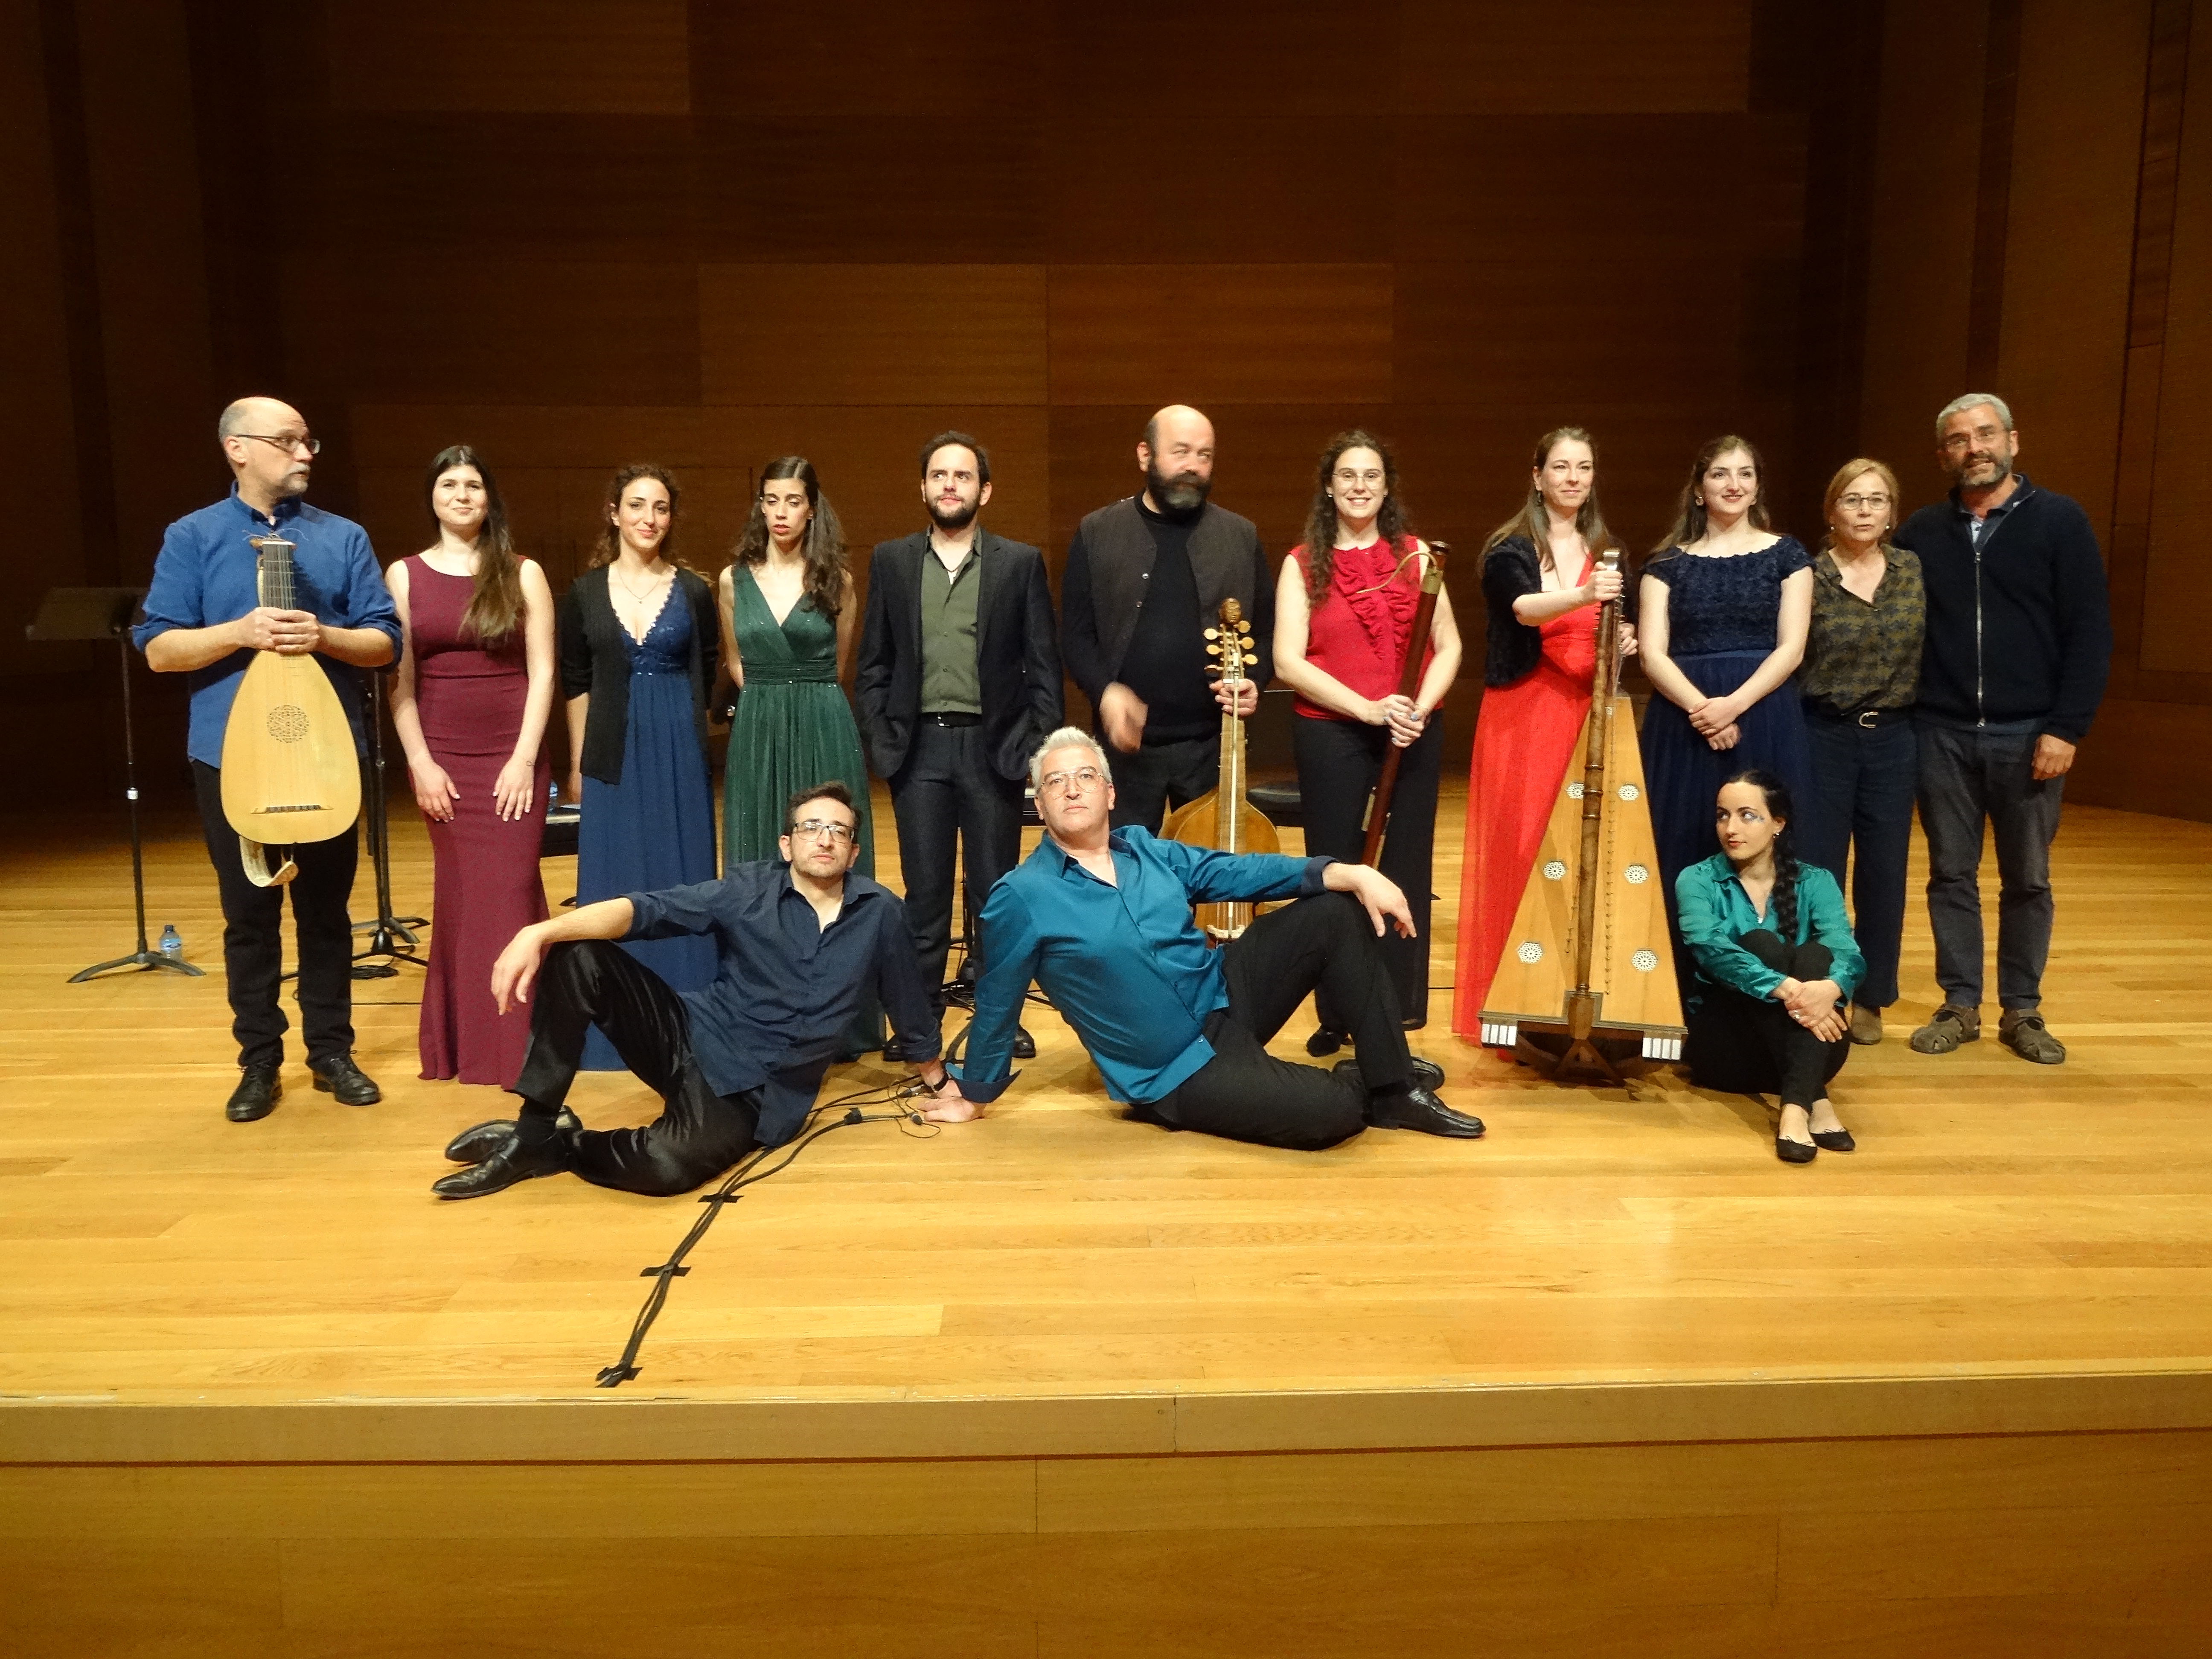 La agrupación O Bando de Surunyo actuó en el segundo concierto celebrado en el Auditorio Miguel Delibes